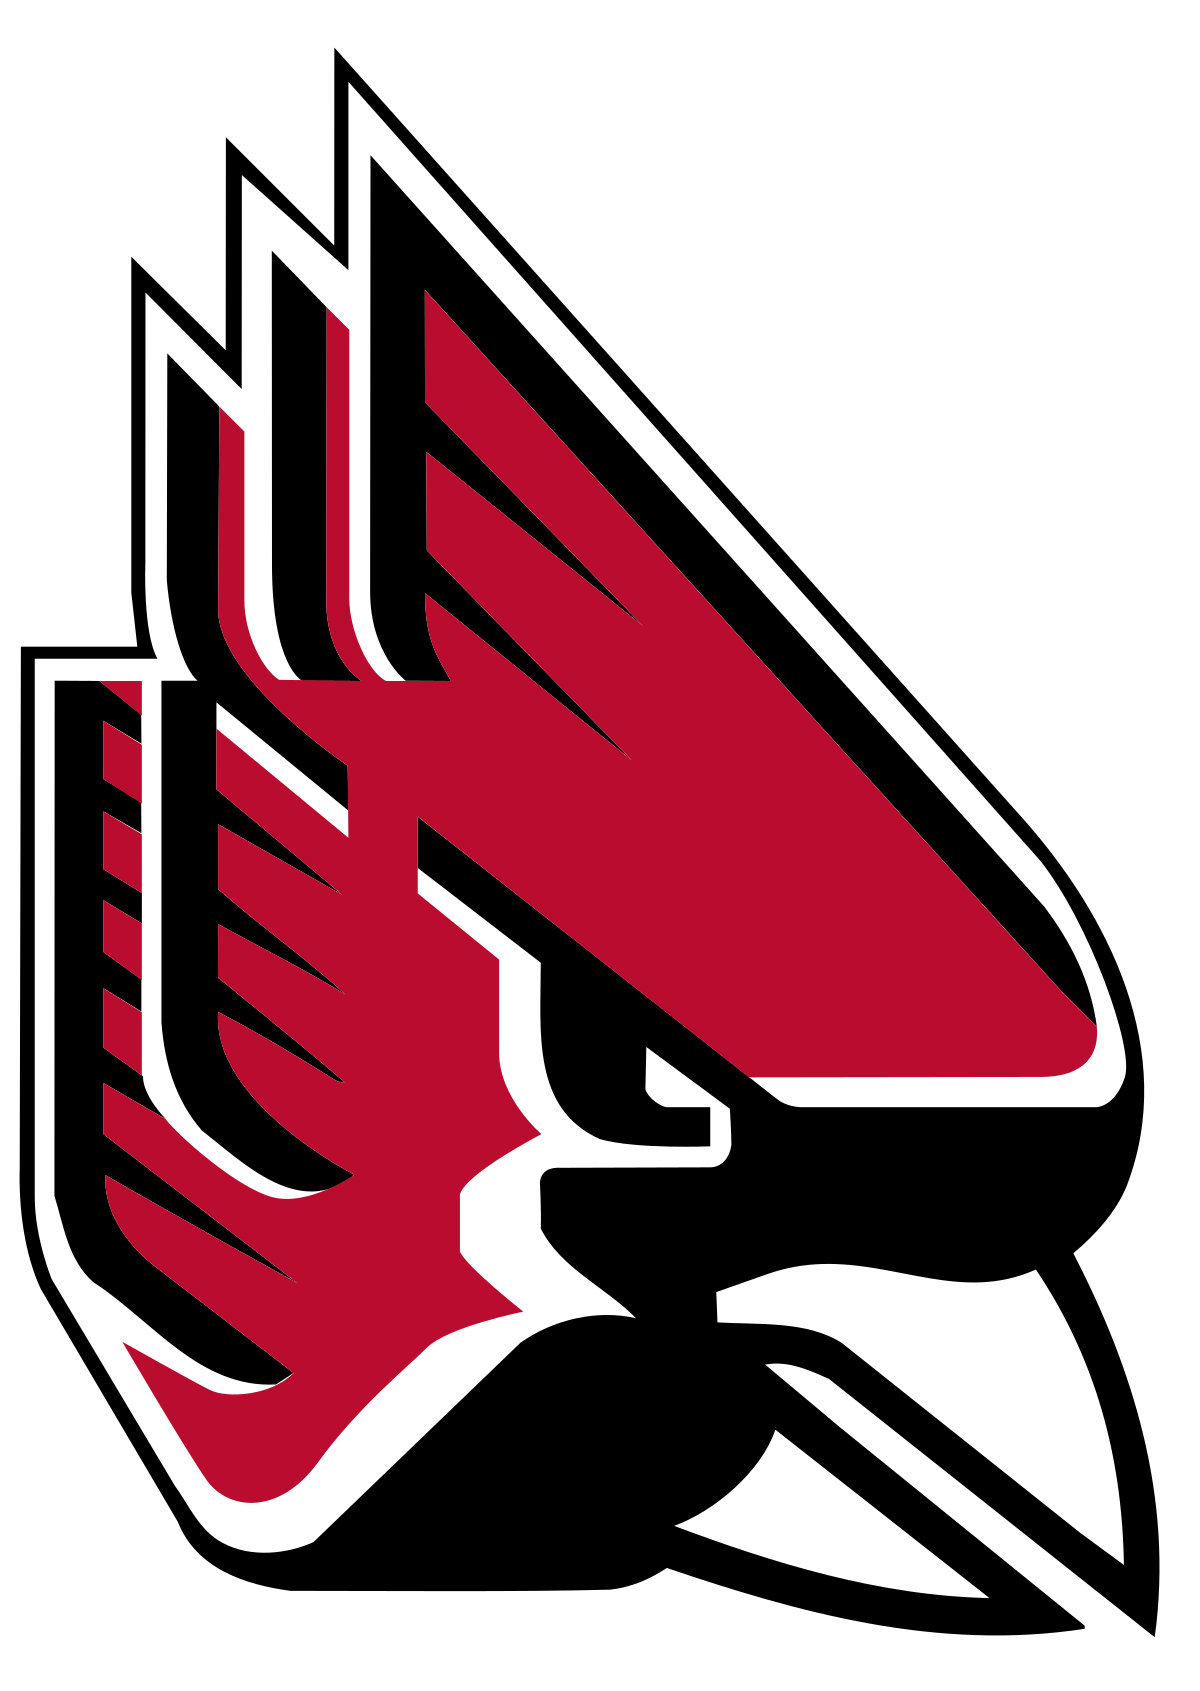 Cardinals Football Logo - Ball State Cardinals